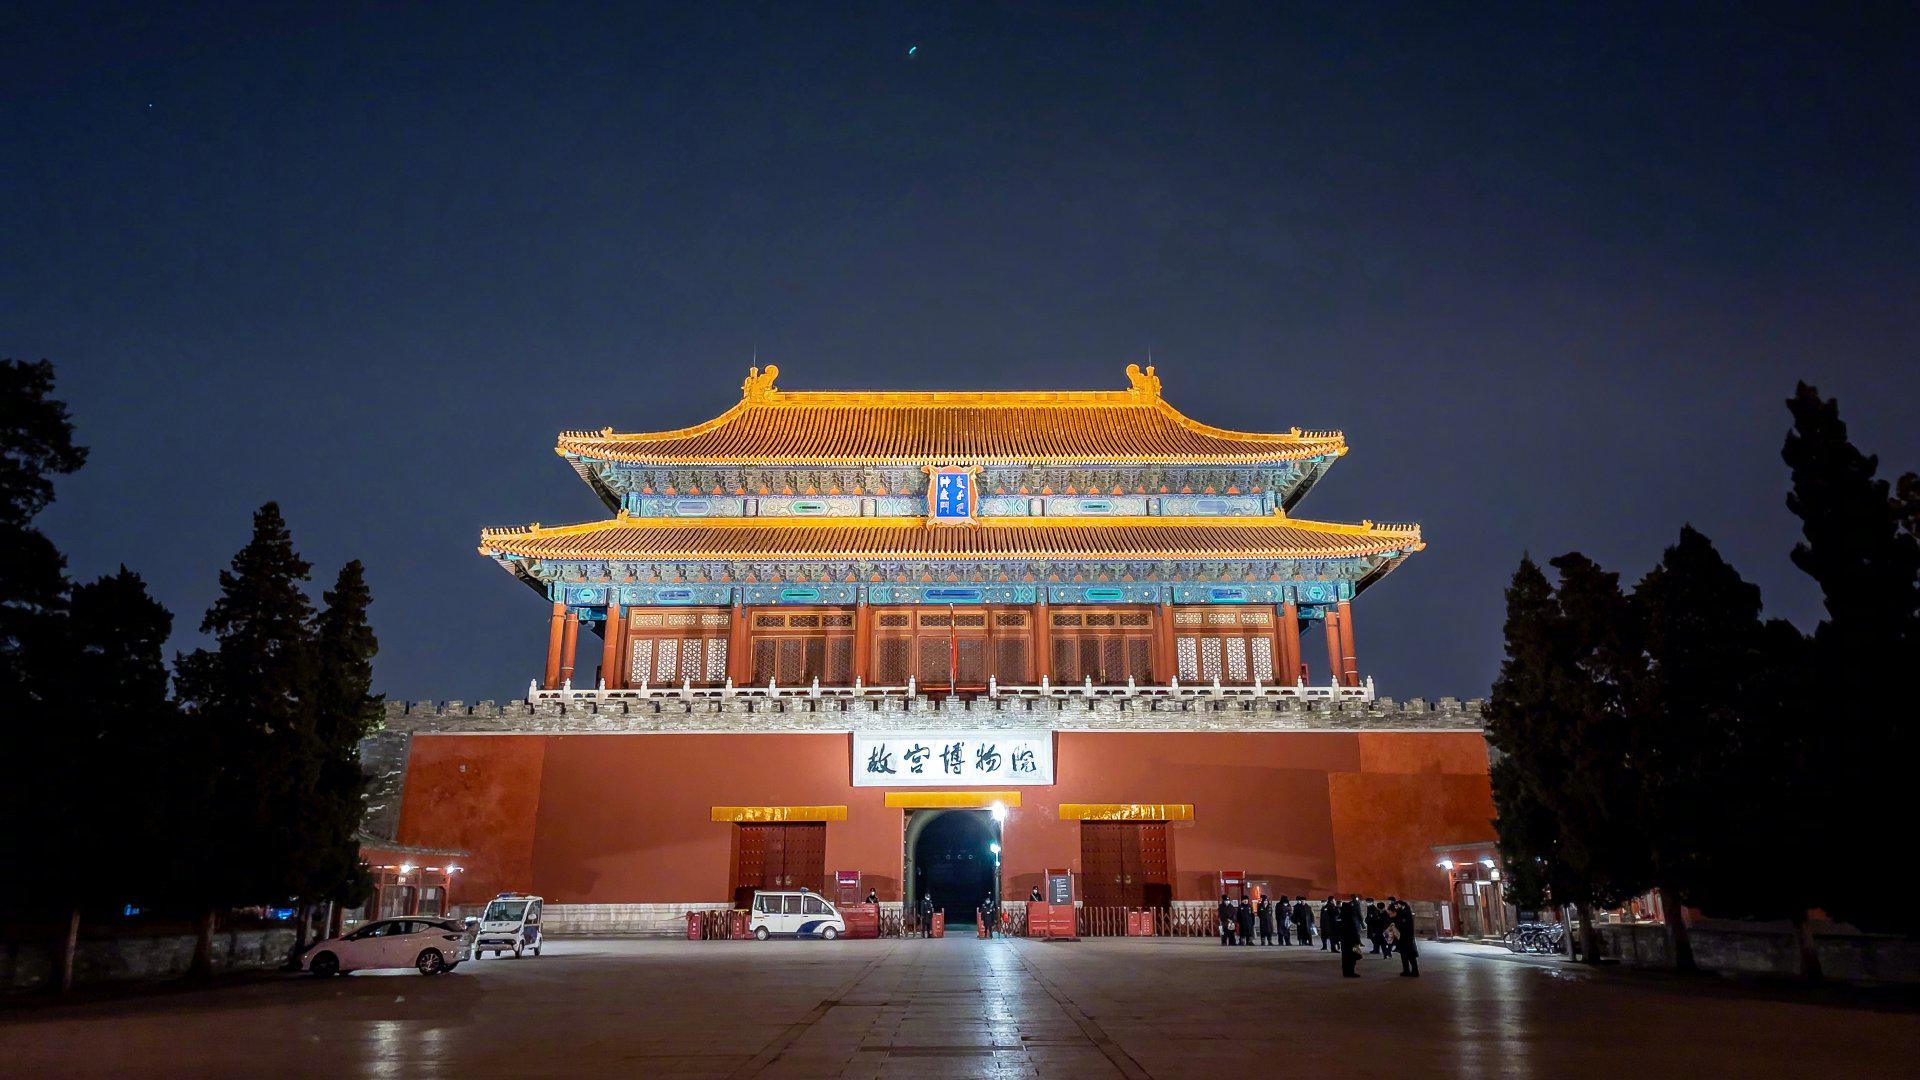 科学网—北京故宫之门 - 陈立群的博文